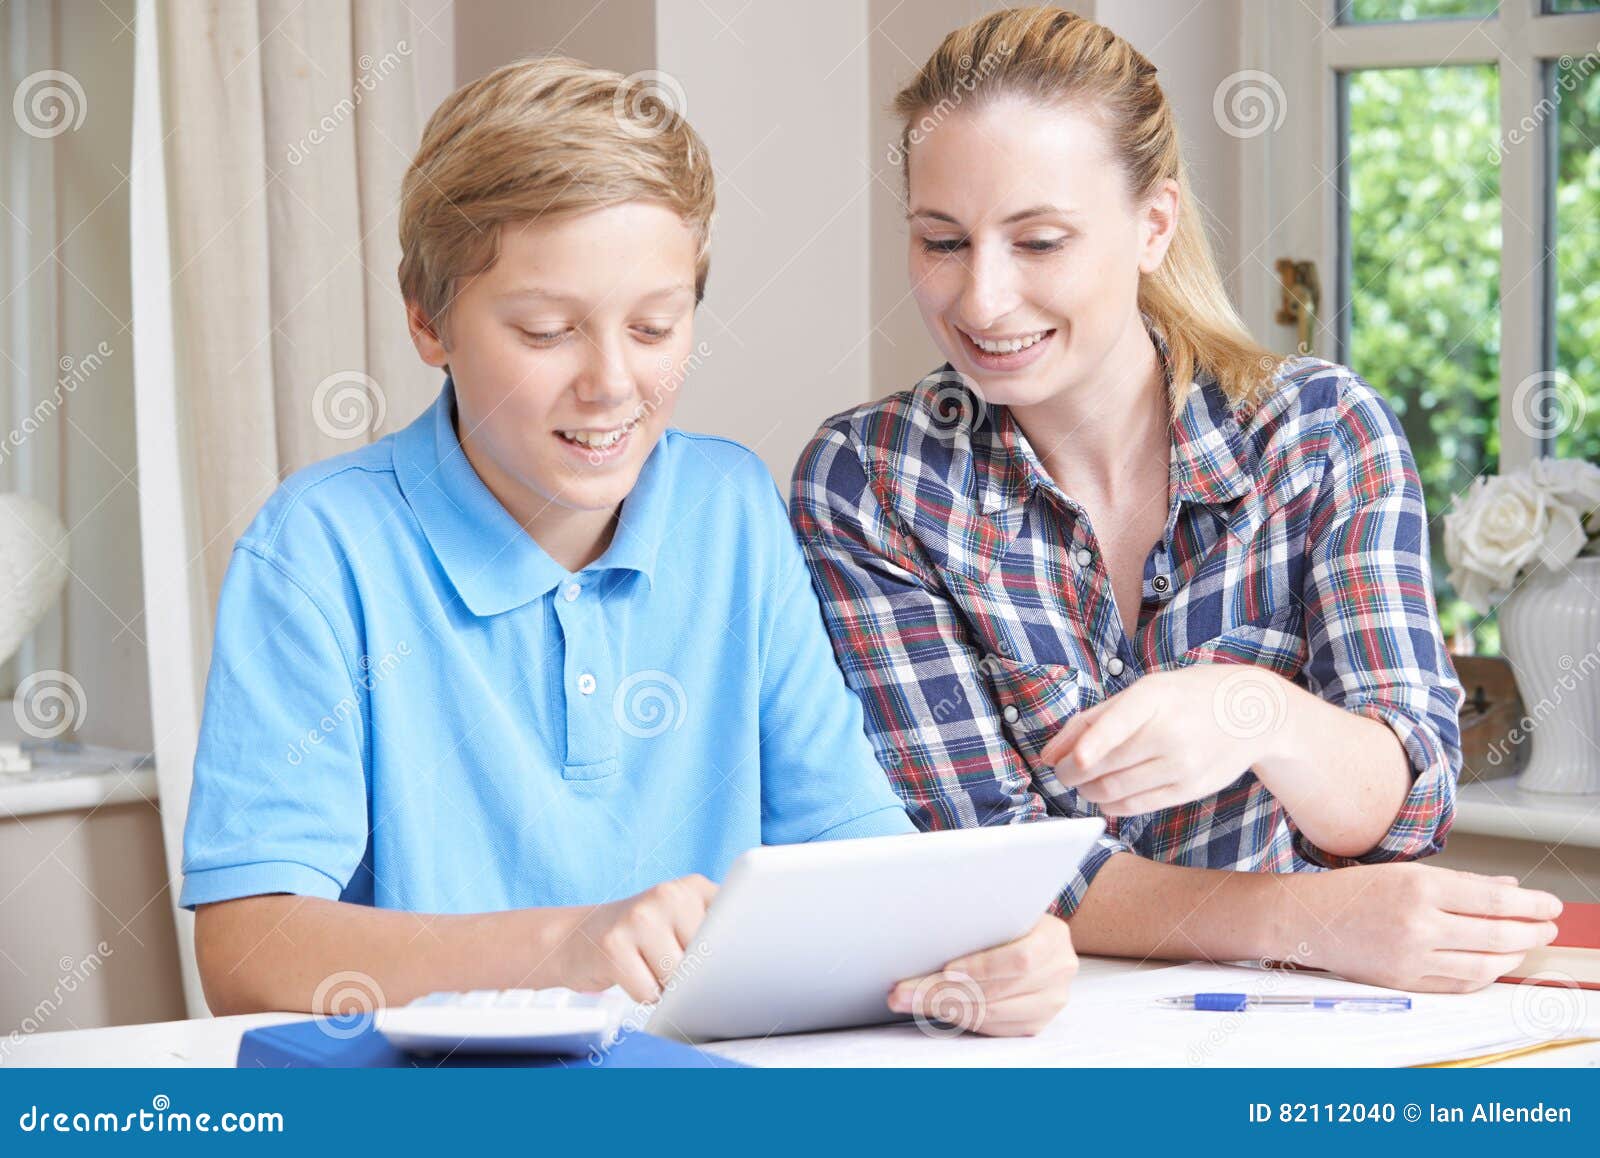 female home tutor helps boy with studies using digital tablet